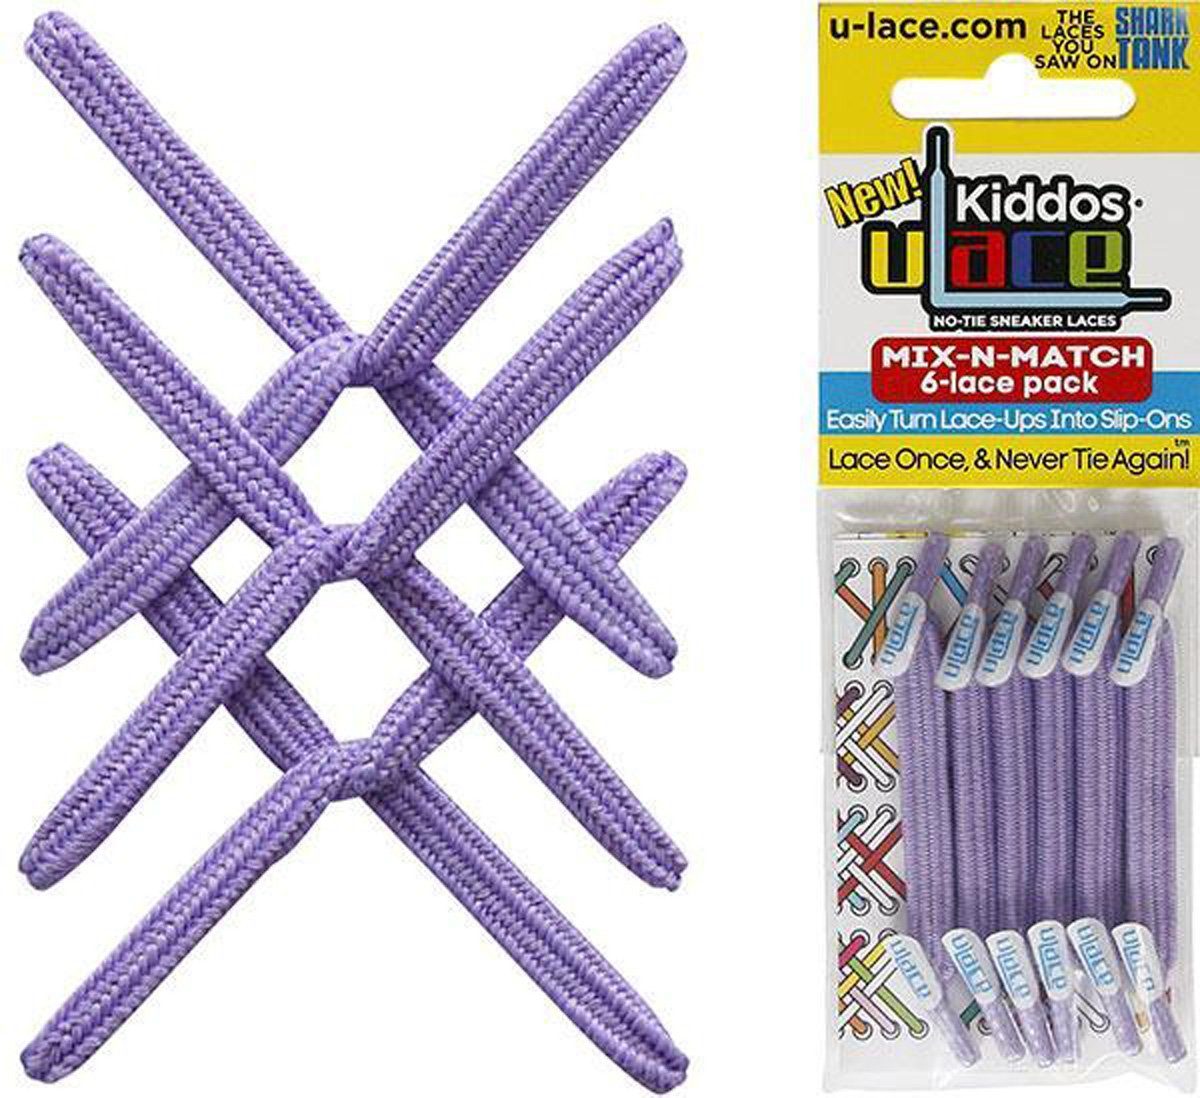 U-Laces Schnürsenkel Kiddos - Wiederhaken für Lavender Schnürsenkel Kinder mit elastische